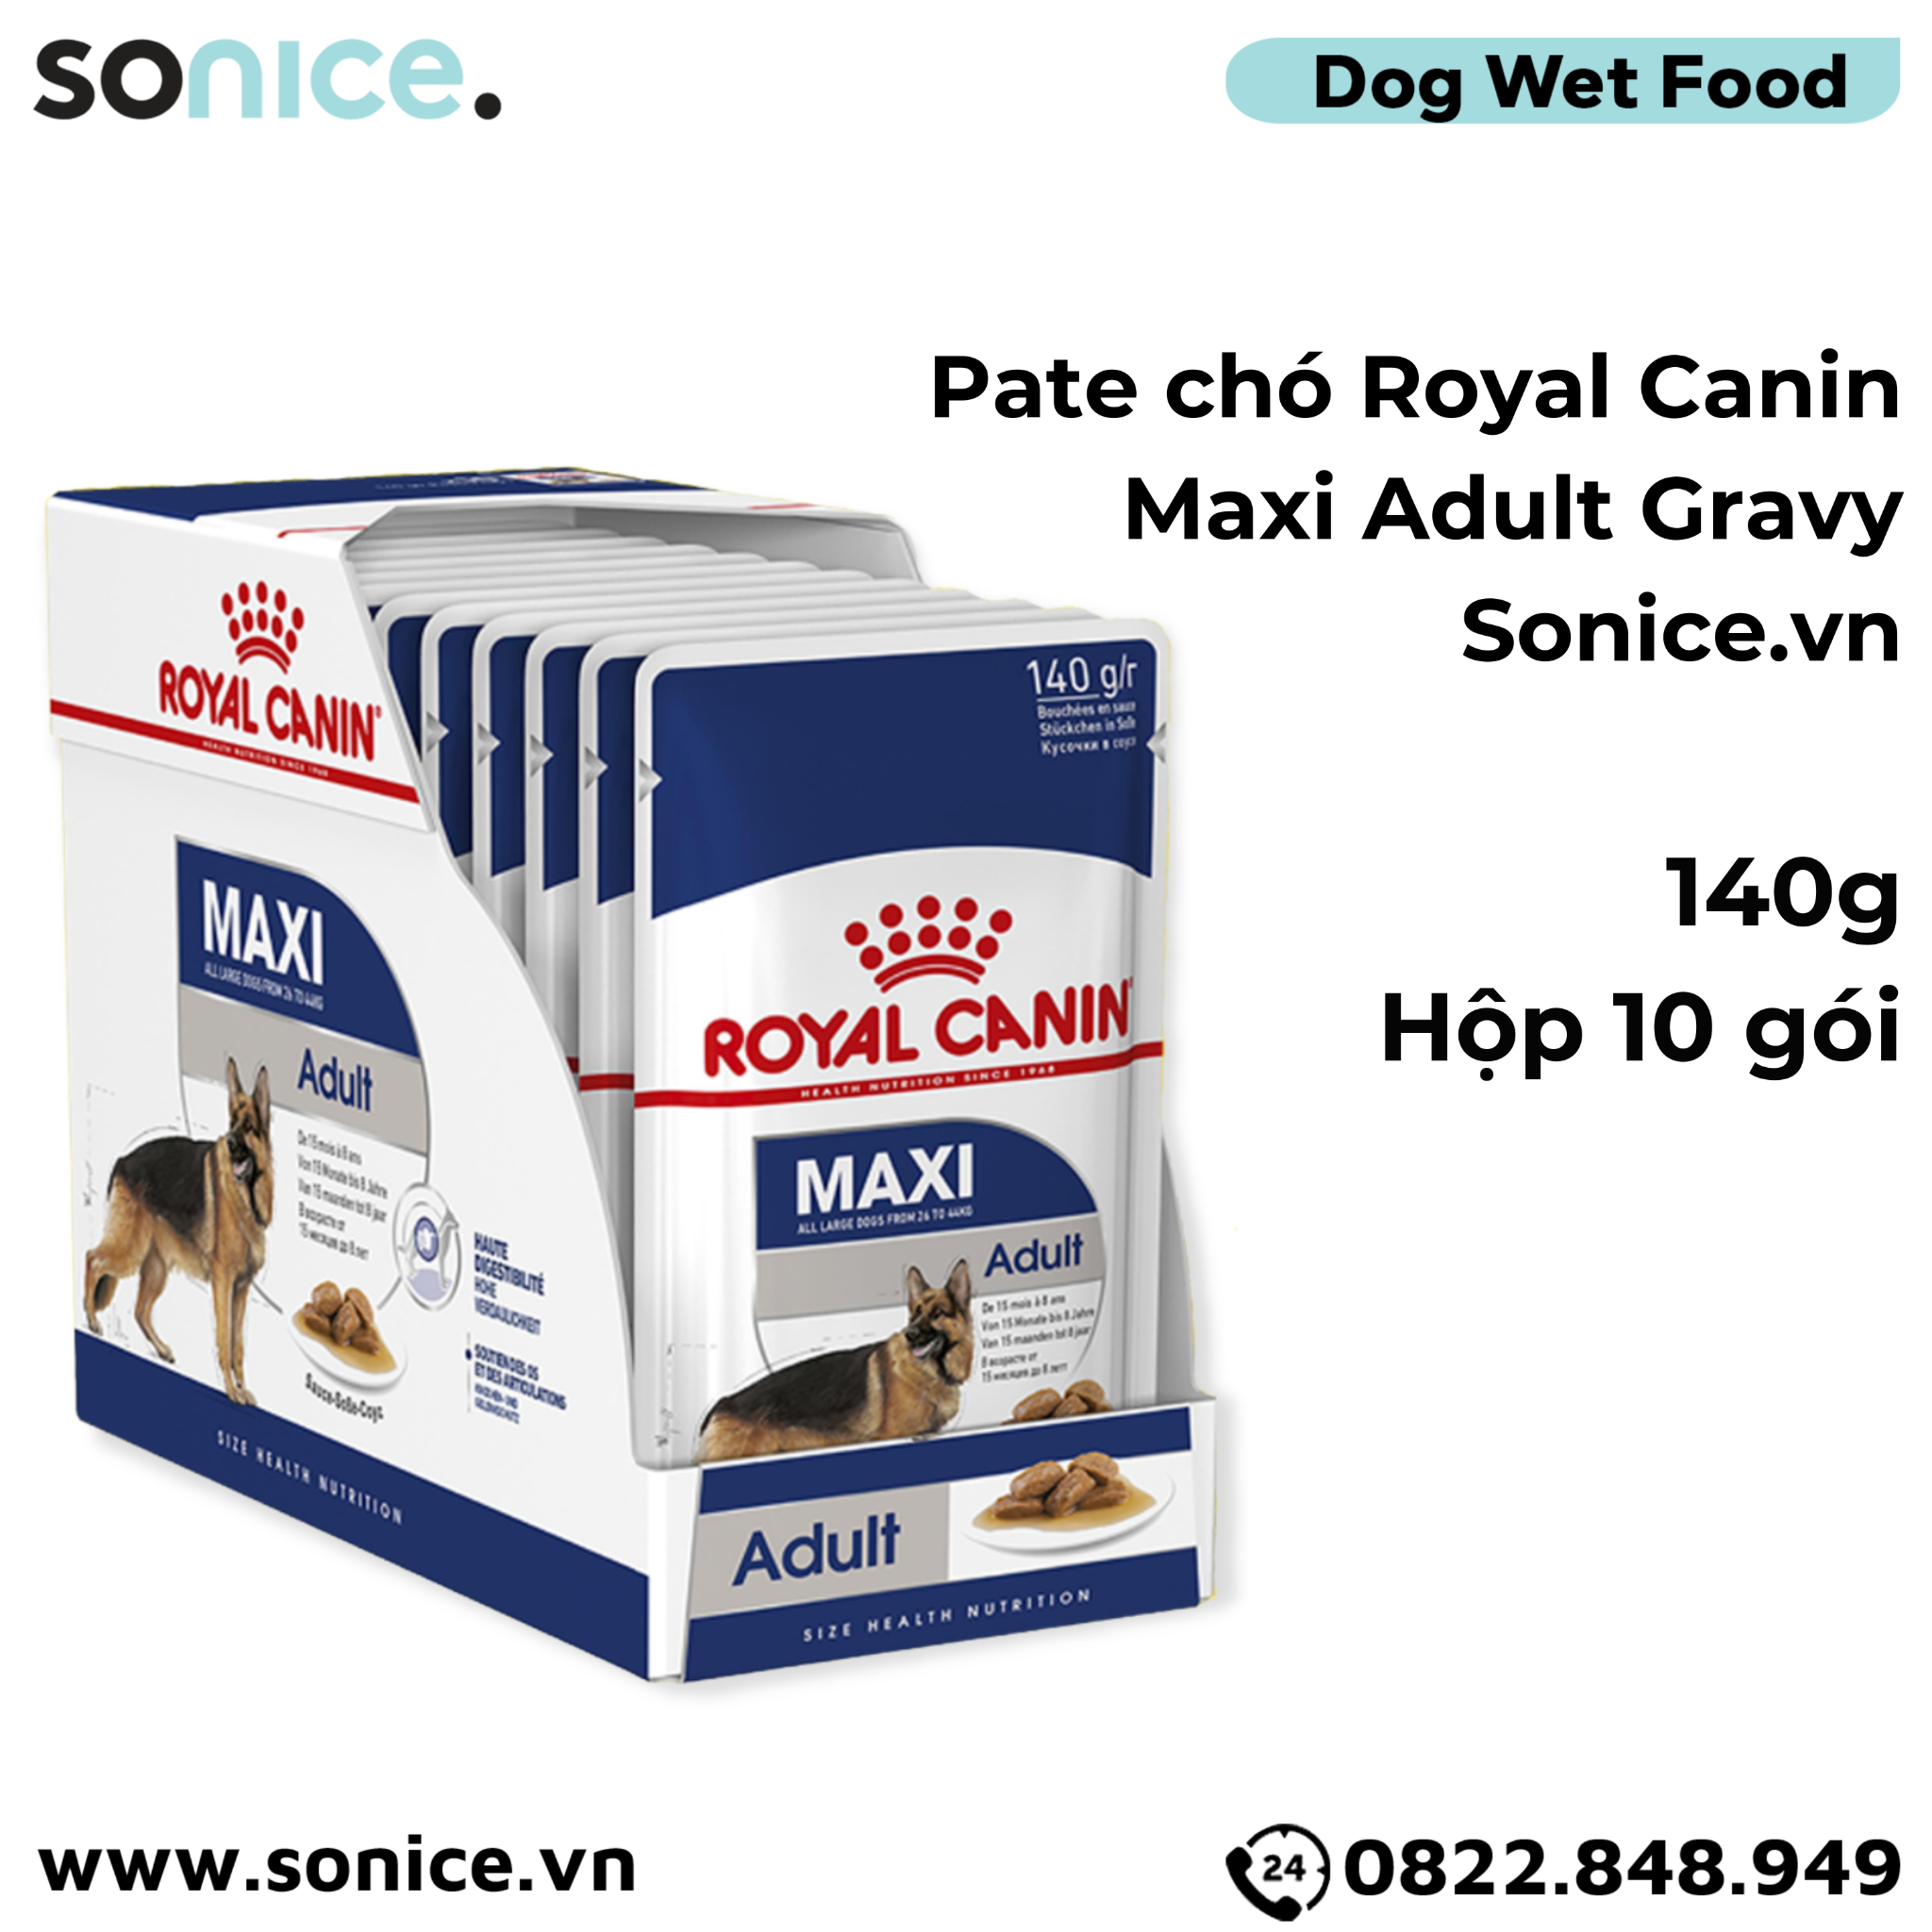  Pate chó Royal Canin Maxi Adult - Gravy 1 hộp 10 gói SONICE. 